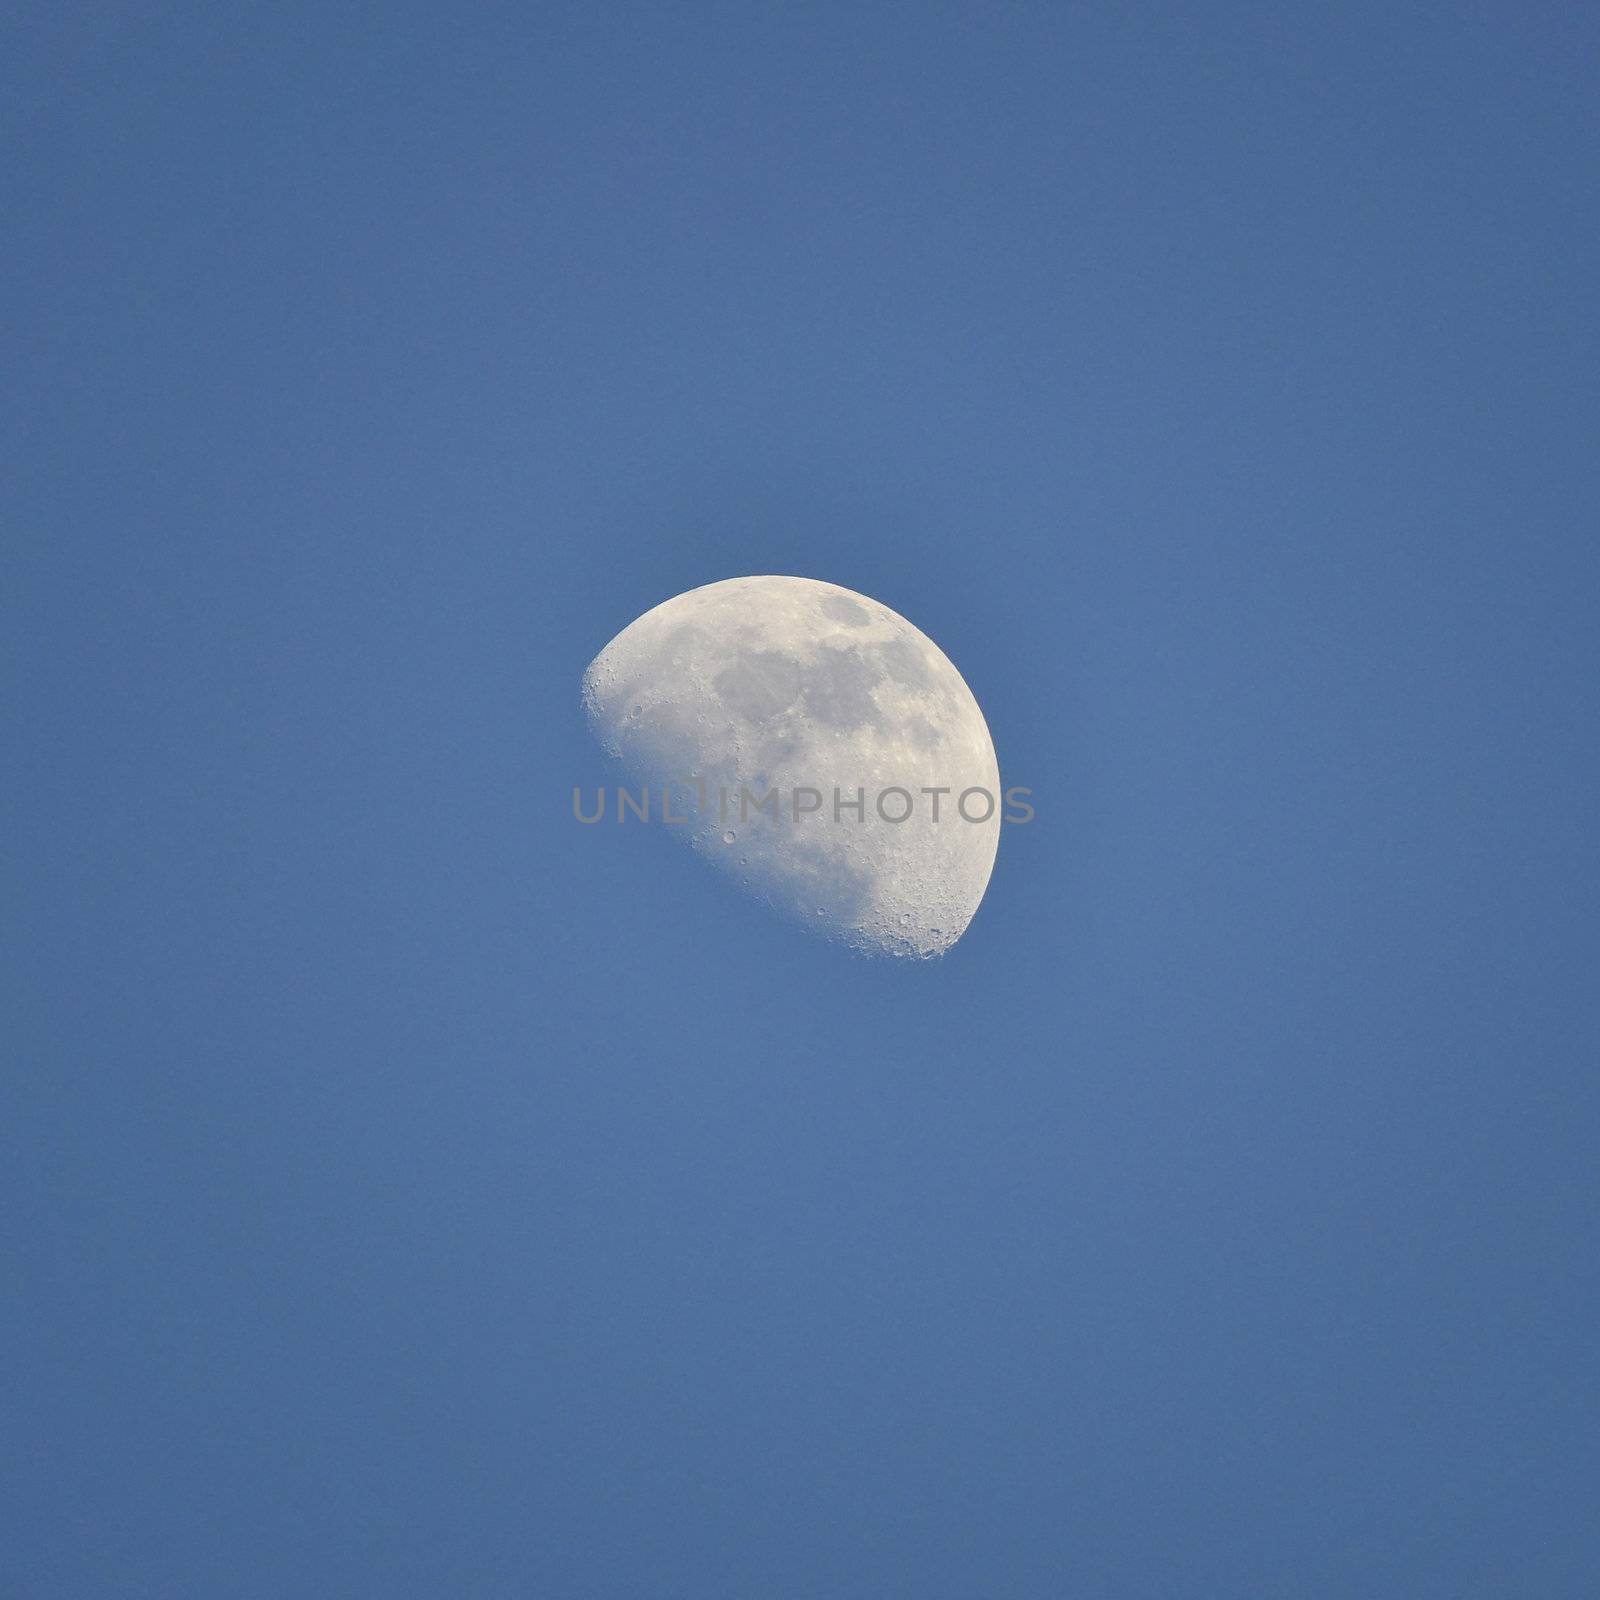 The Moon on a dark blue sky